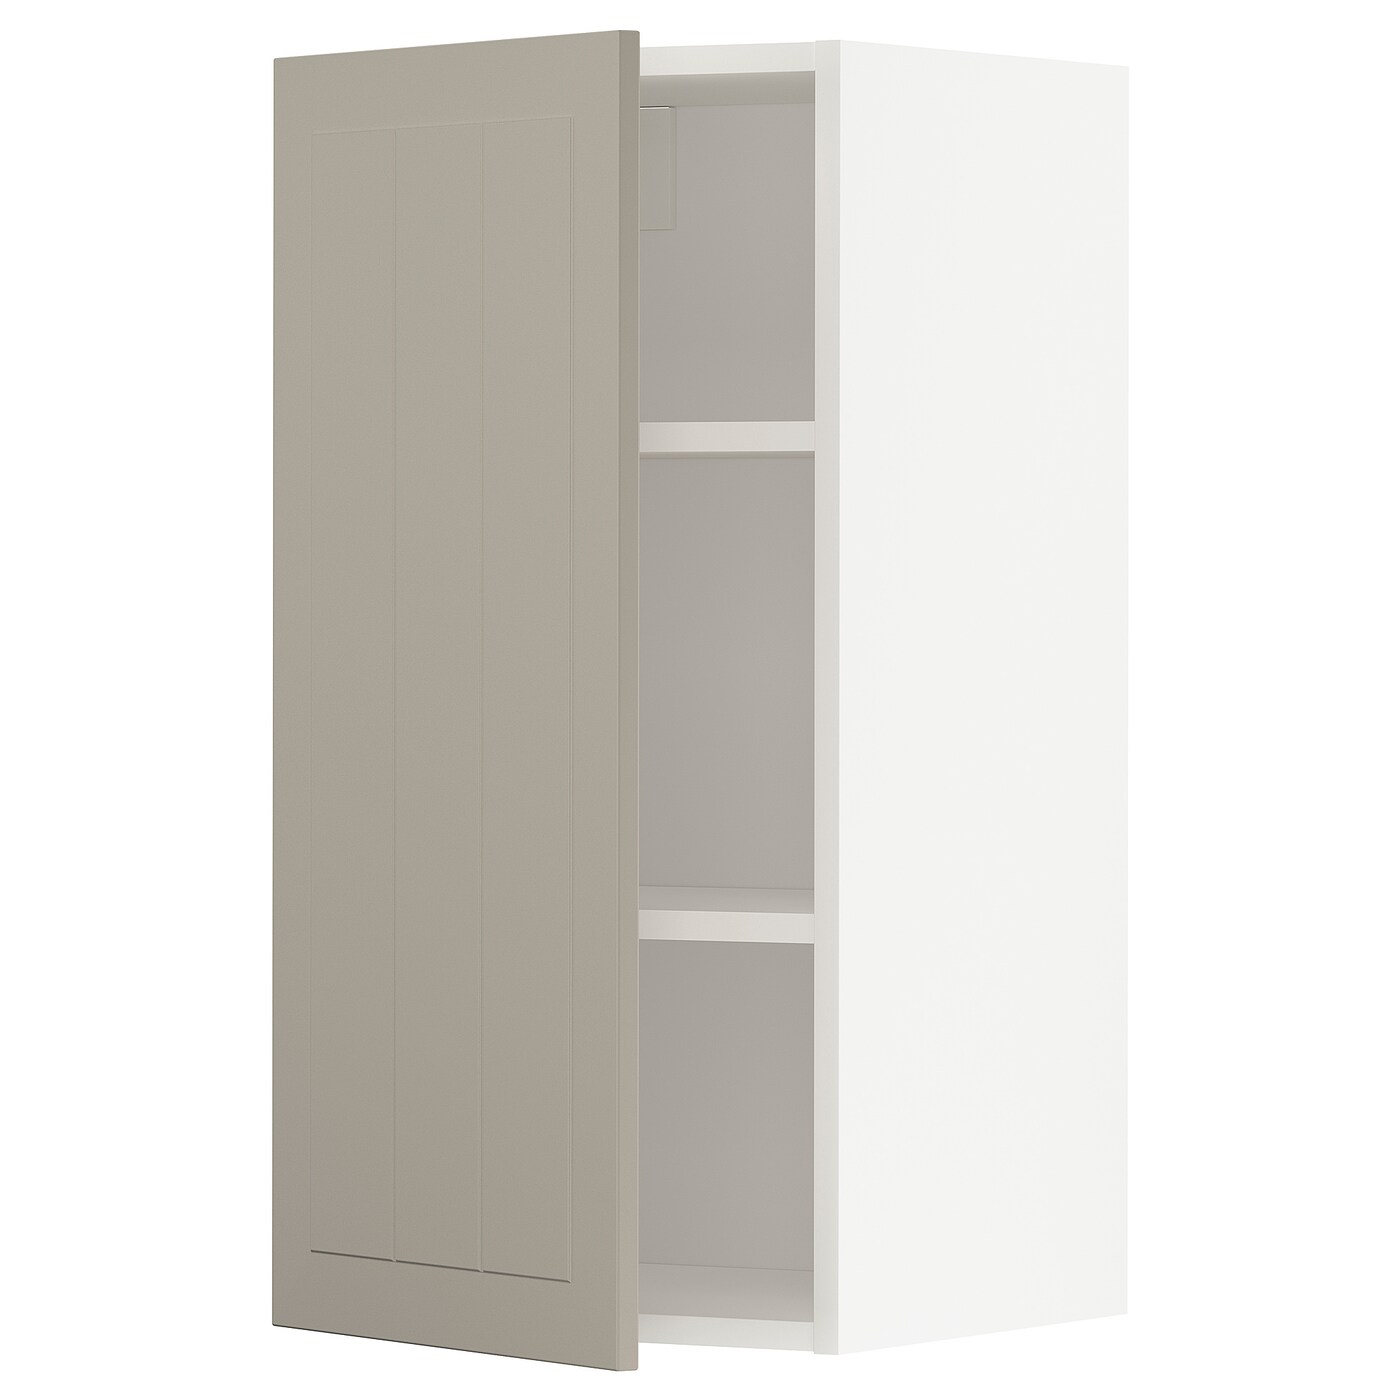 Навесной шкаф с полкой - METOD IKEA/ МЕТОД ИКЕА, 80х40 см, светло-коричневый/белый